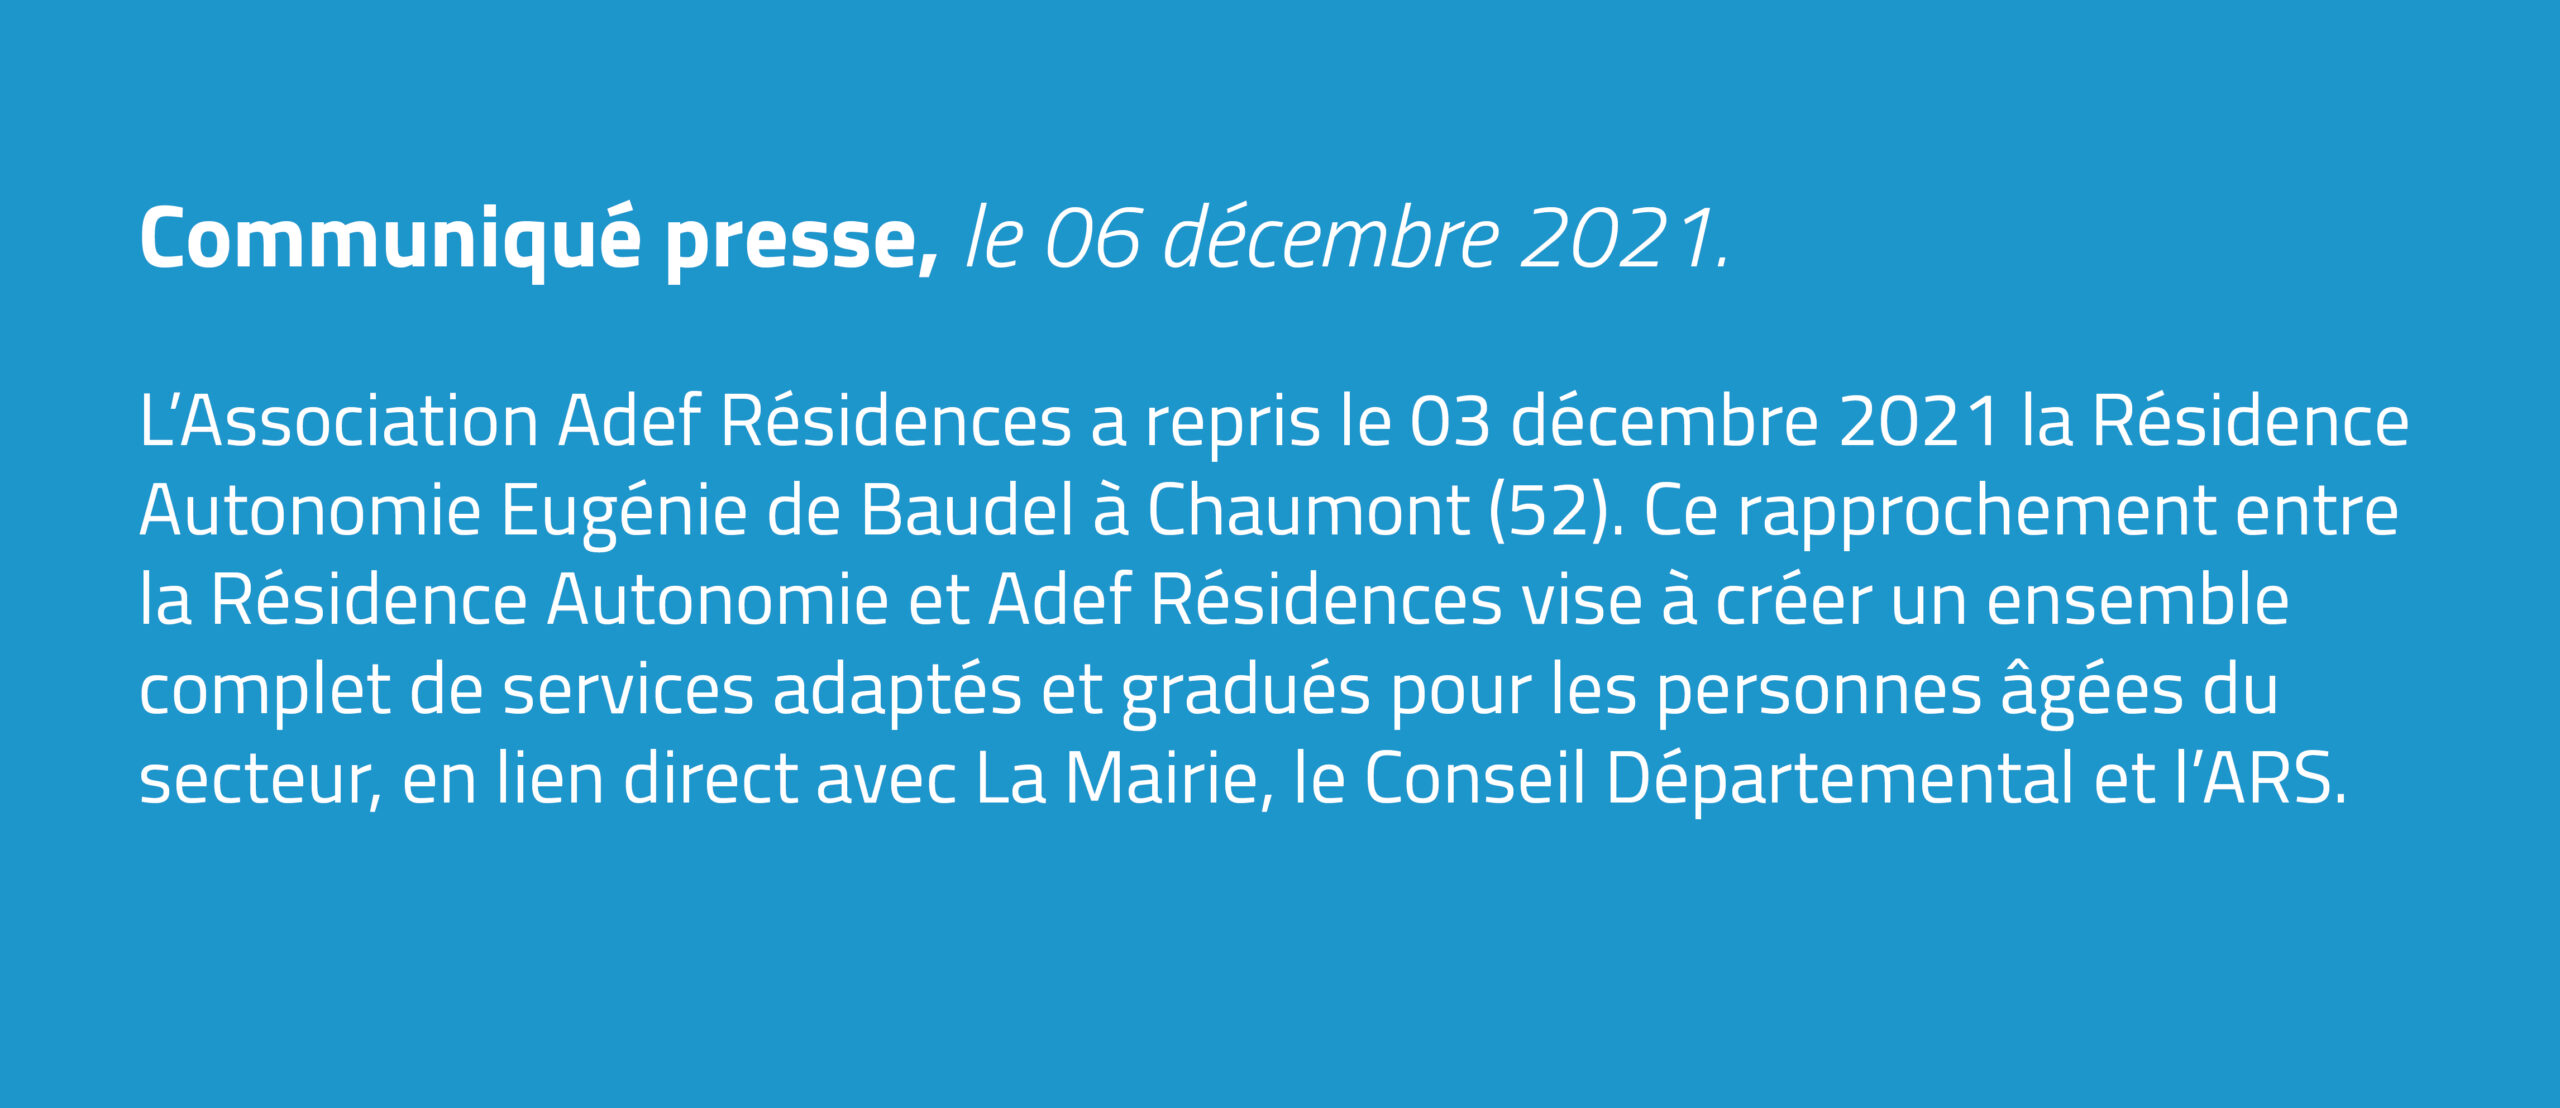 L’Association Adef Résidences a repris le 03 décembre 2021 la Résidence Autonomie Eugénie de Baudel à Chaumont (52).